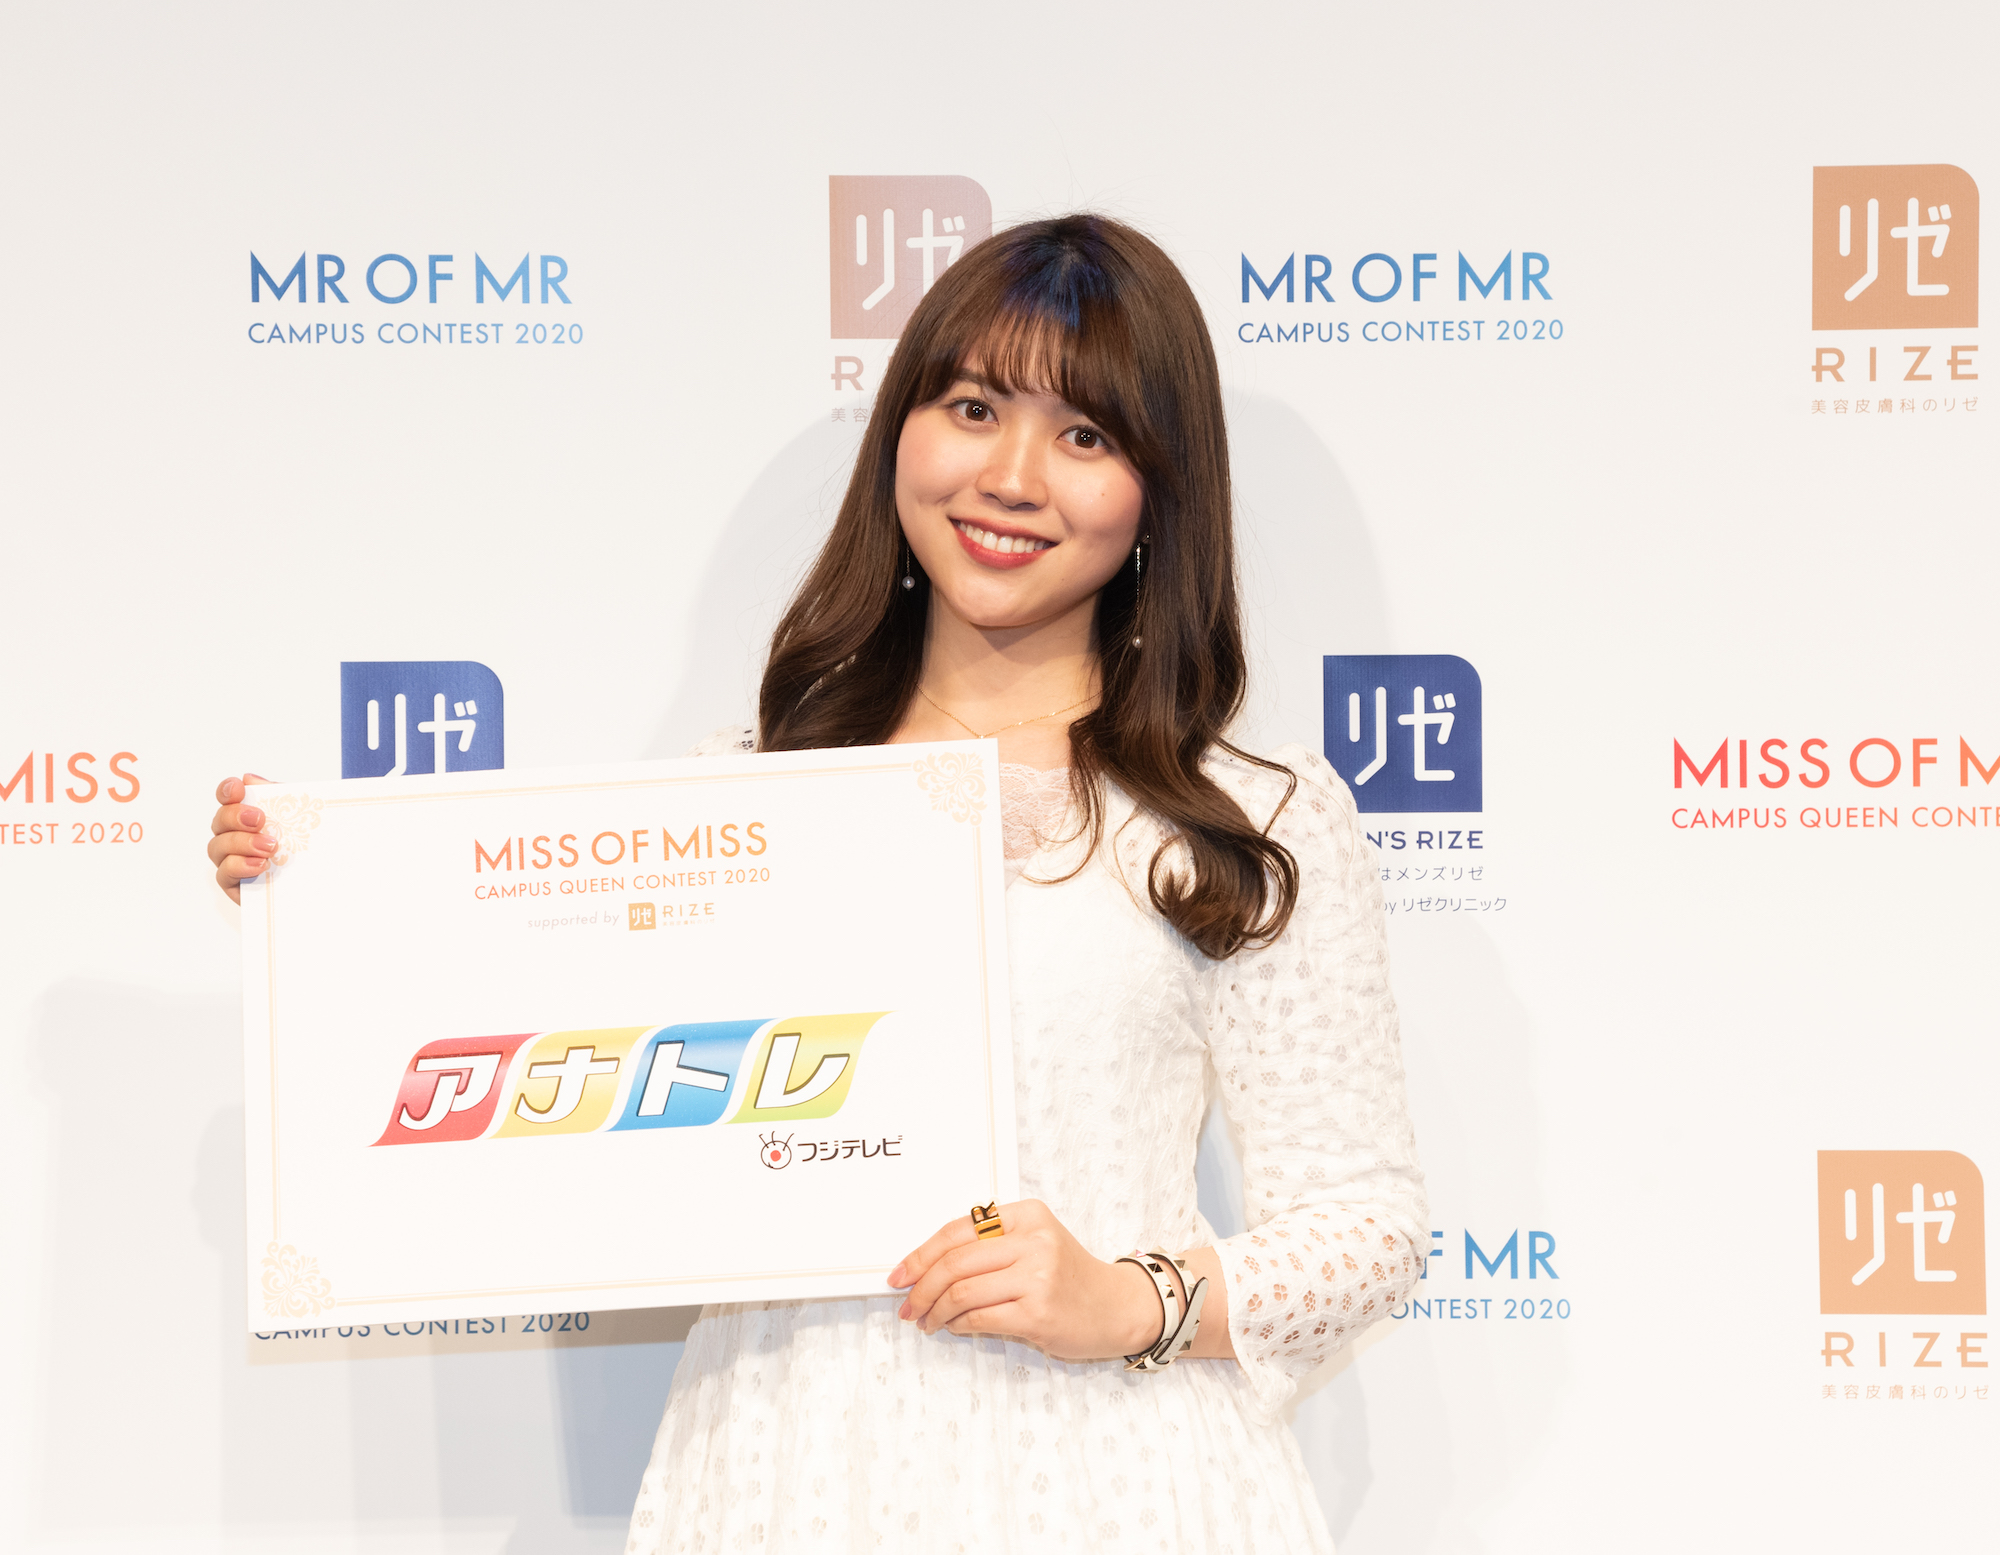 片山莉紗子／『MISS OF MISS CAMPUS QUEEN CONTEST 2020 supported by リゼクリニック』2020年3月26日